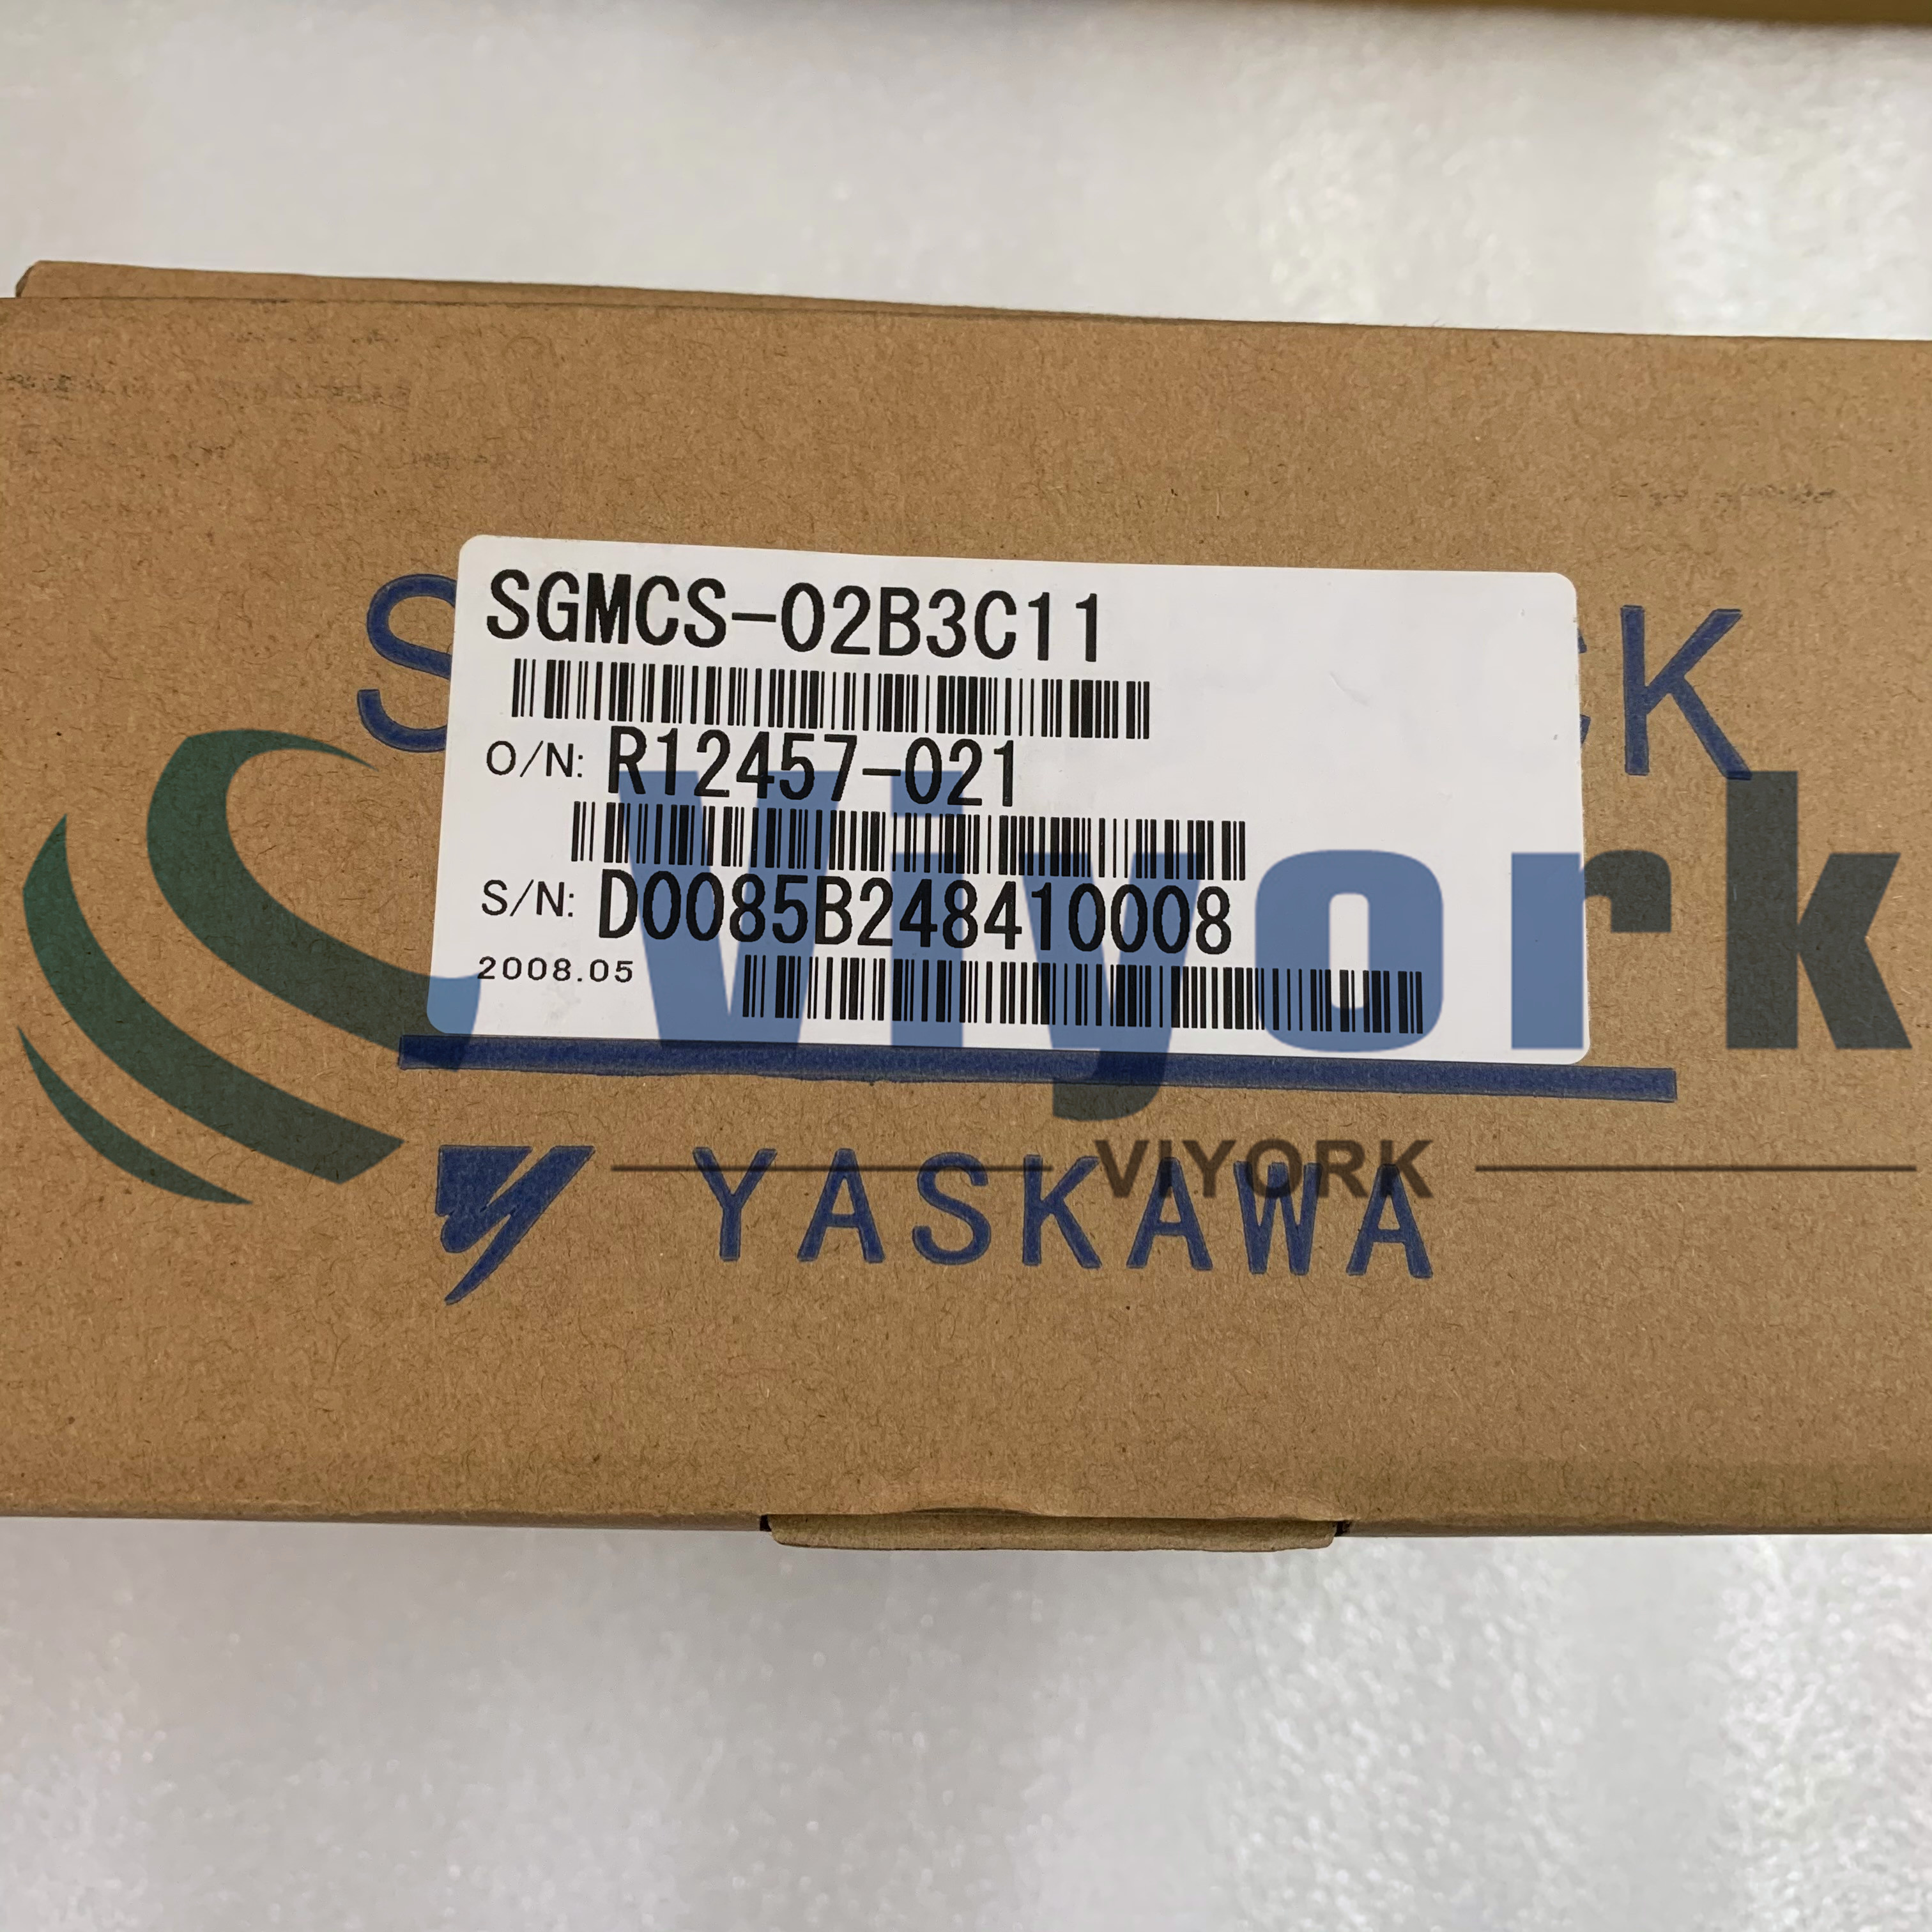 Yaskawa SGMCS-02B3C11 AC SERVO MOTOR 500 RPM MAX 200 VAC NEW